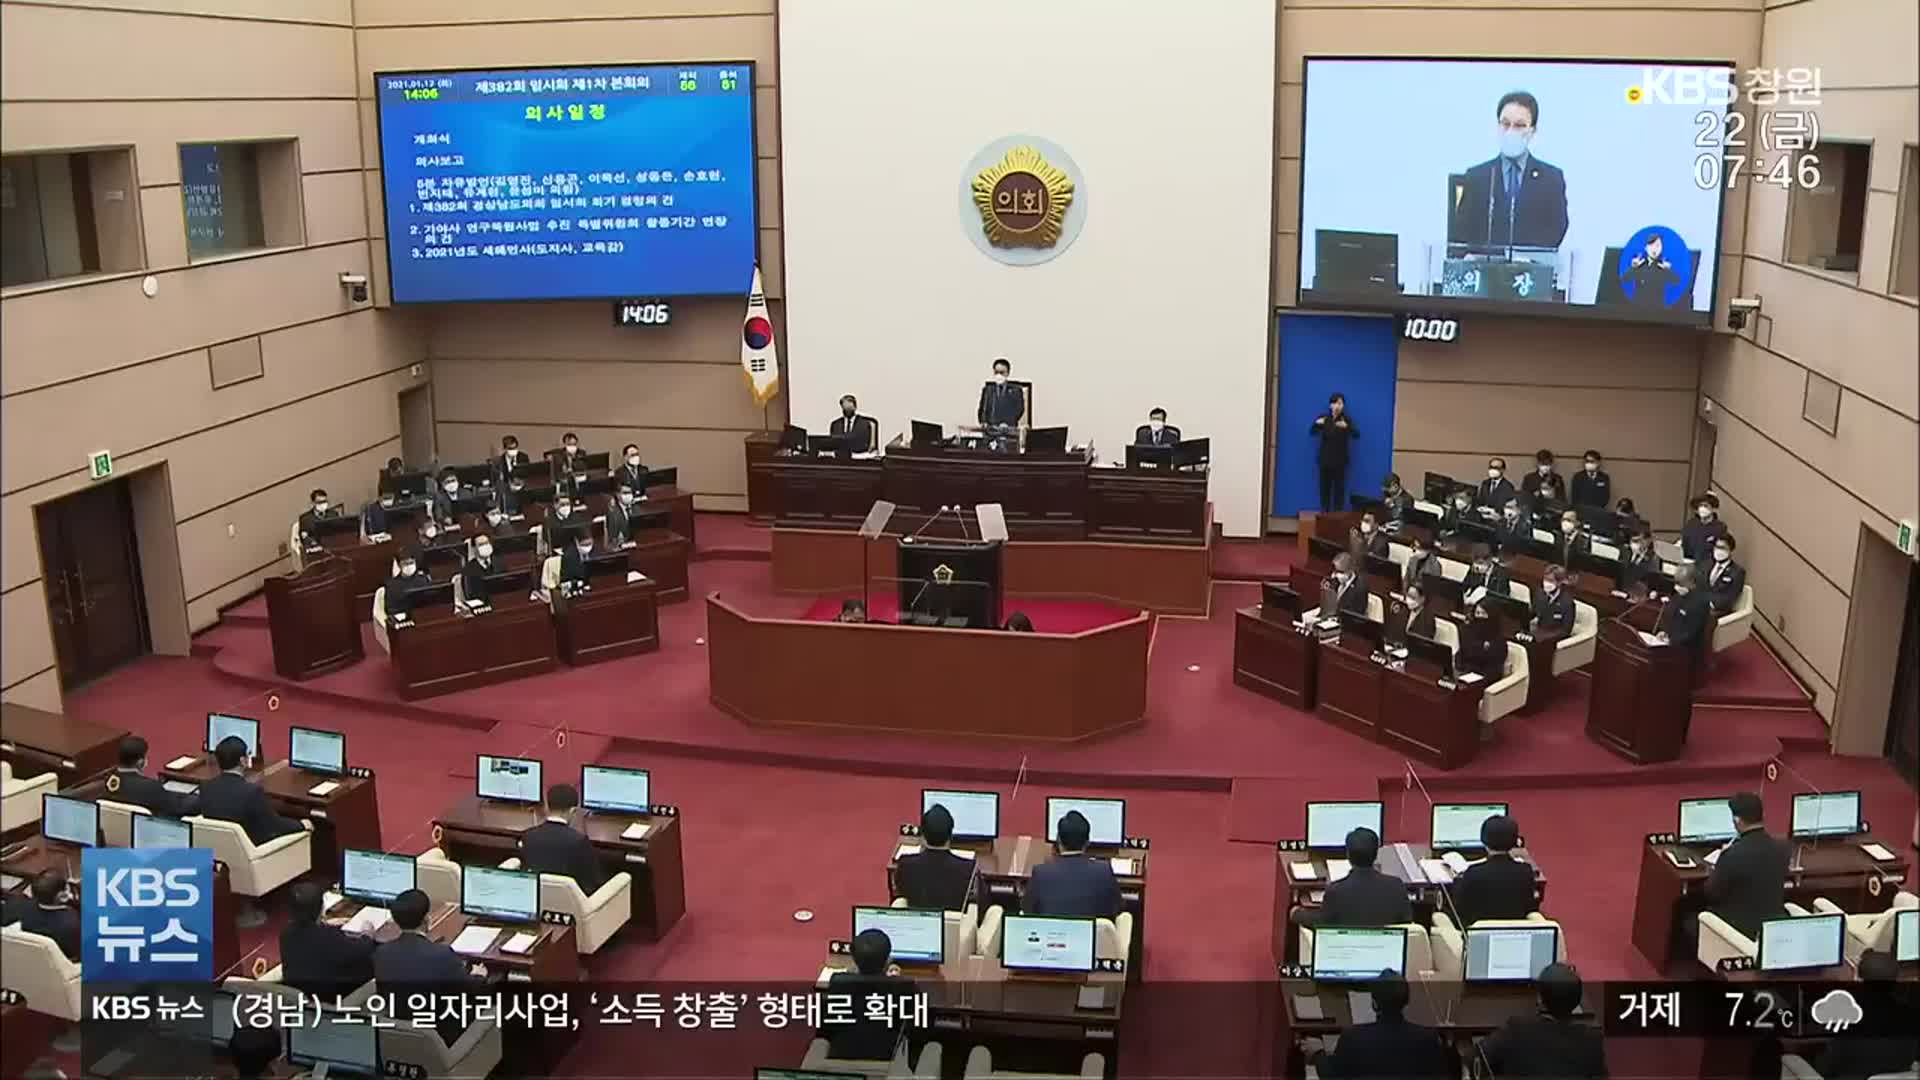 [영상] 경남도의회 7개월 ‘자리 다툼’…이제 끝나셨나요?